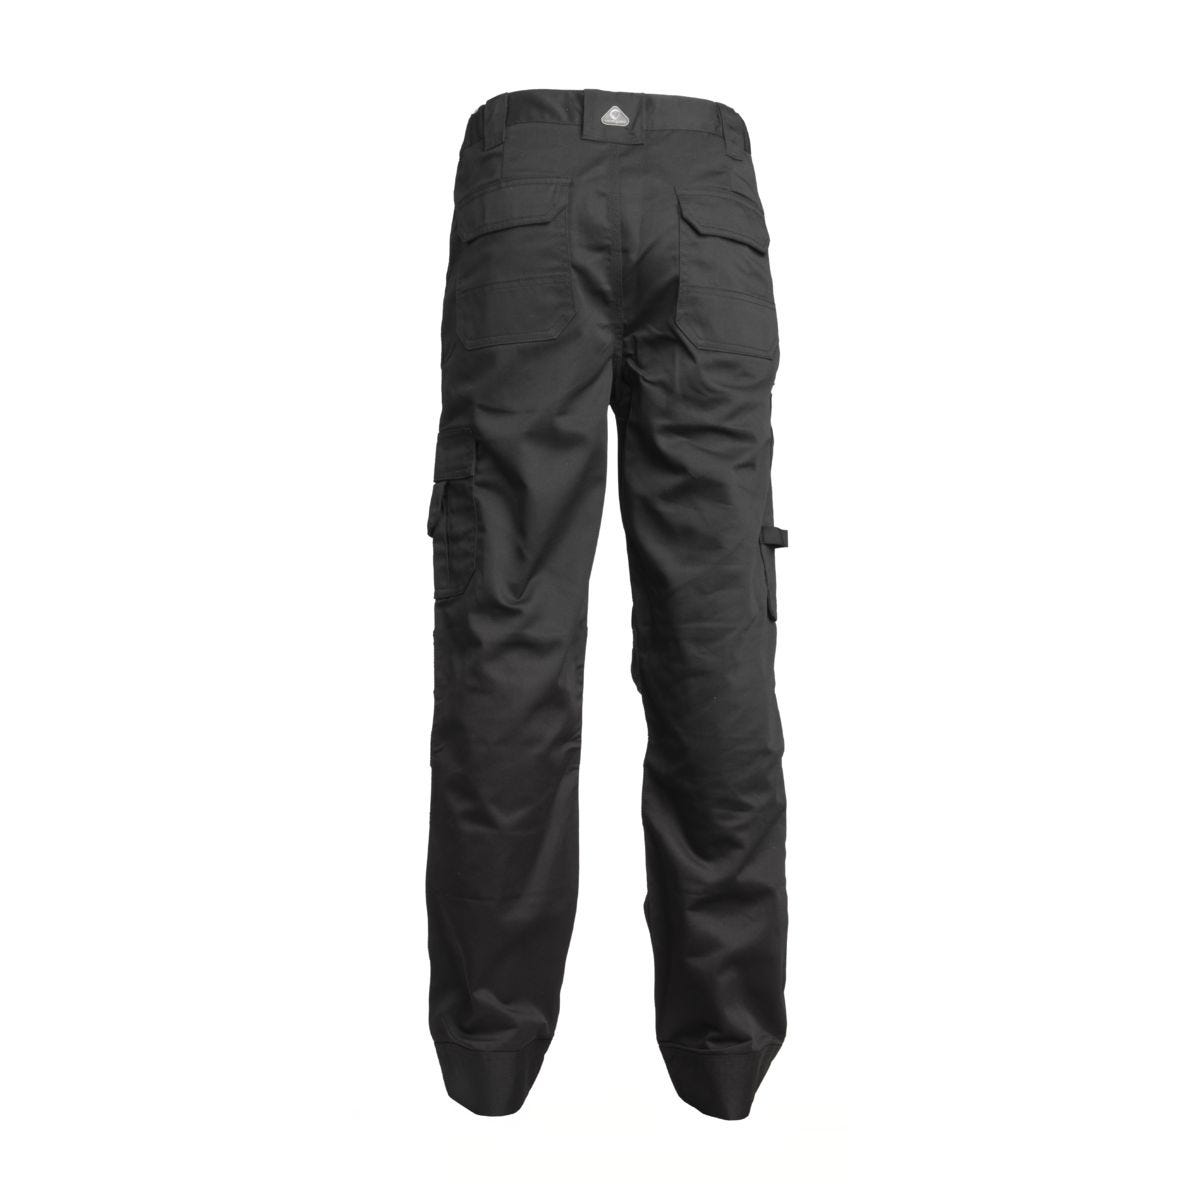 Pantalon CLASS noir - COVERGUARD - Taille L 1